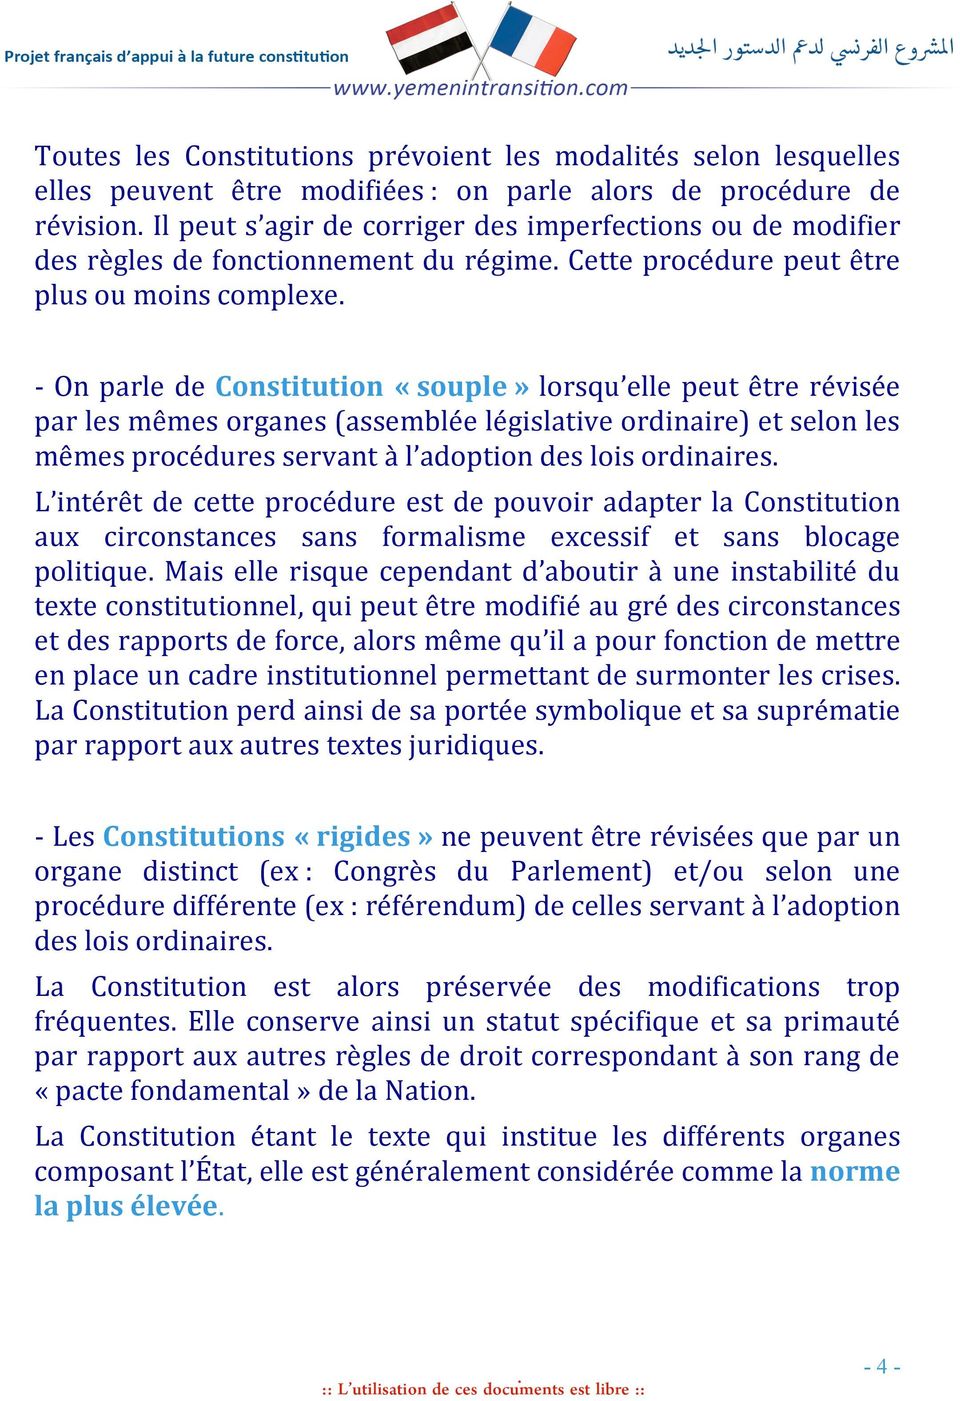 - On parle de Constitution «souple» lorsqu elle peut être révisée par les mêmes organes (assemblée législative ordinaire) et selon les mêmes procédures servant à l adoption des lois ordinaires.